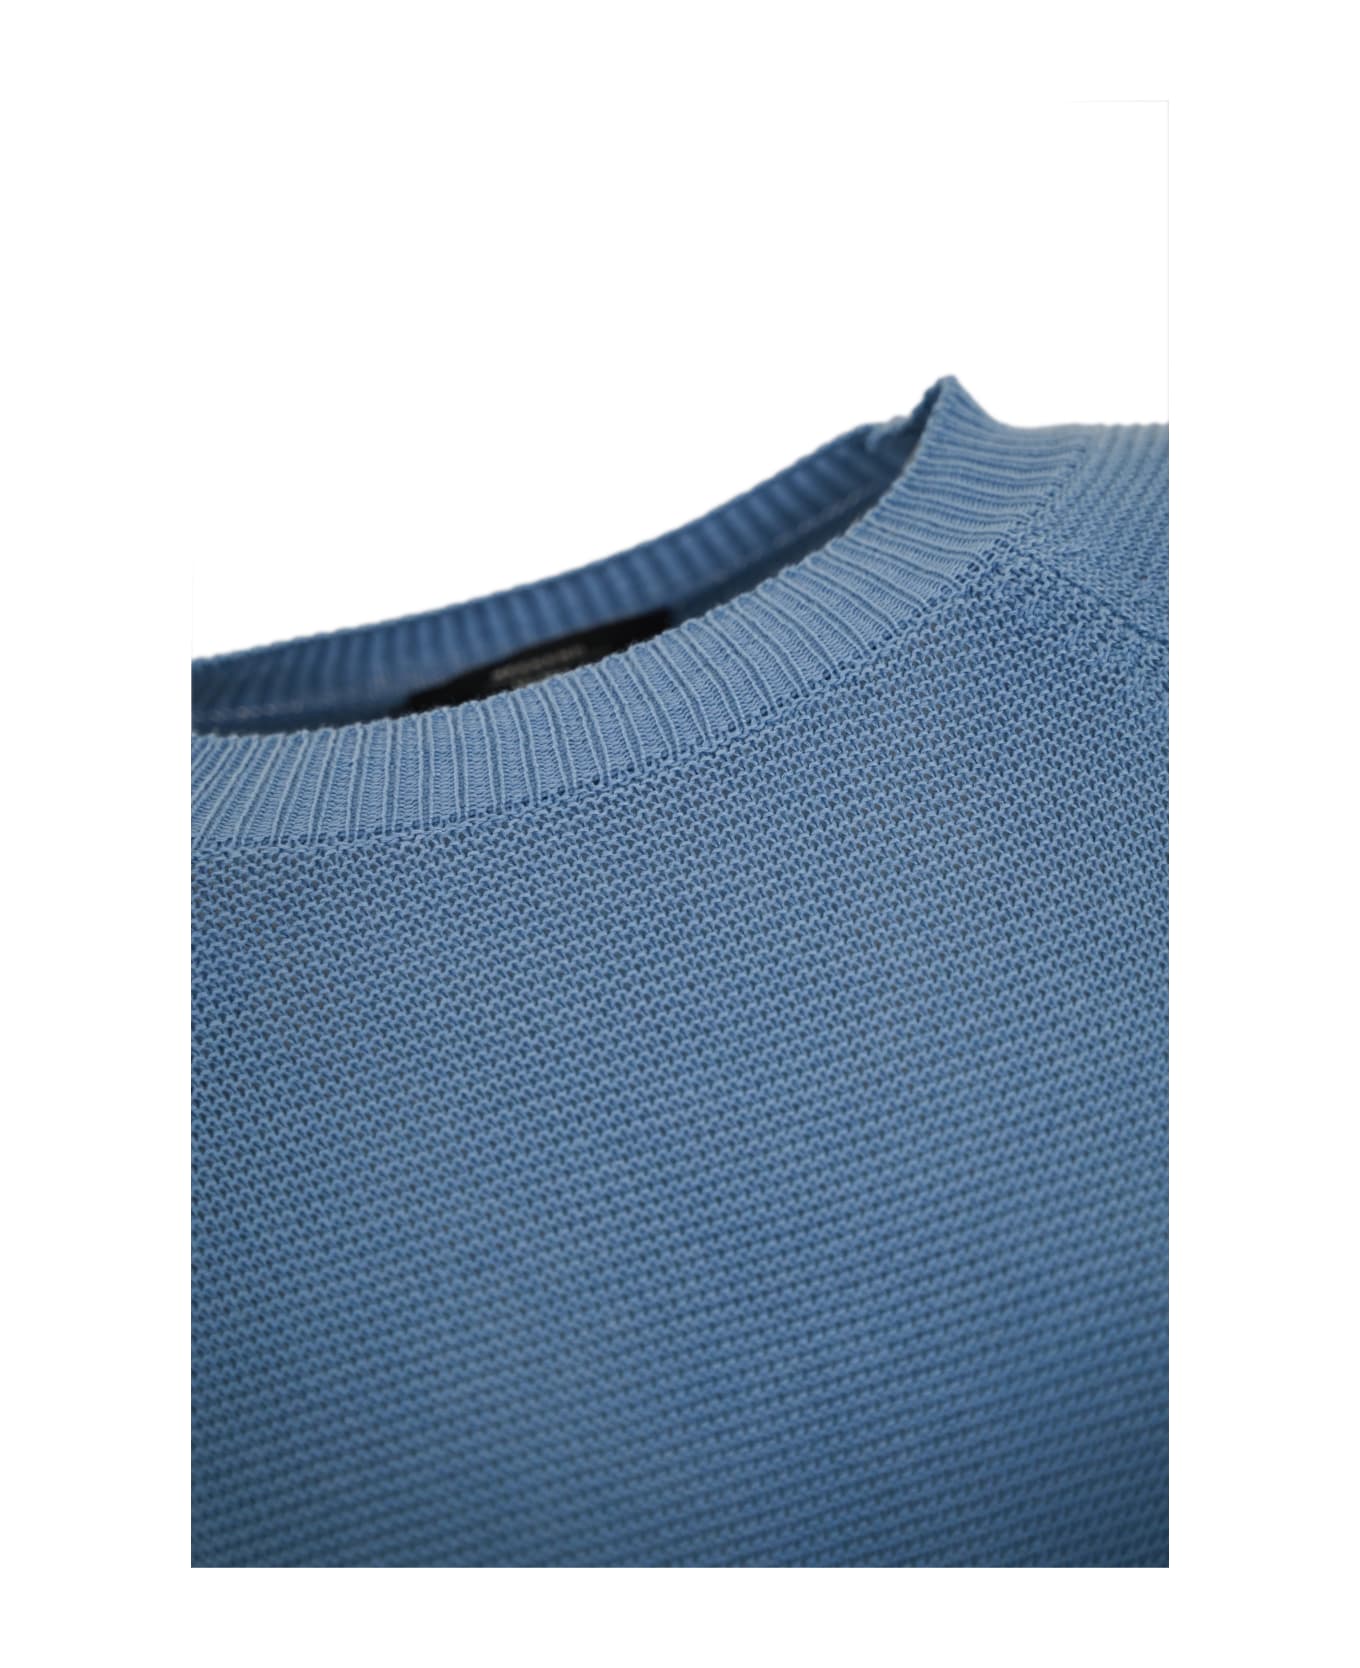 Weekend Max Mara 'linz' Cotton Sweater - Light blue